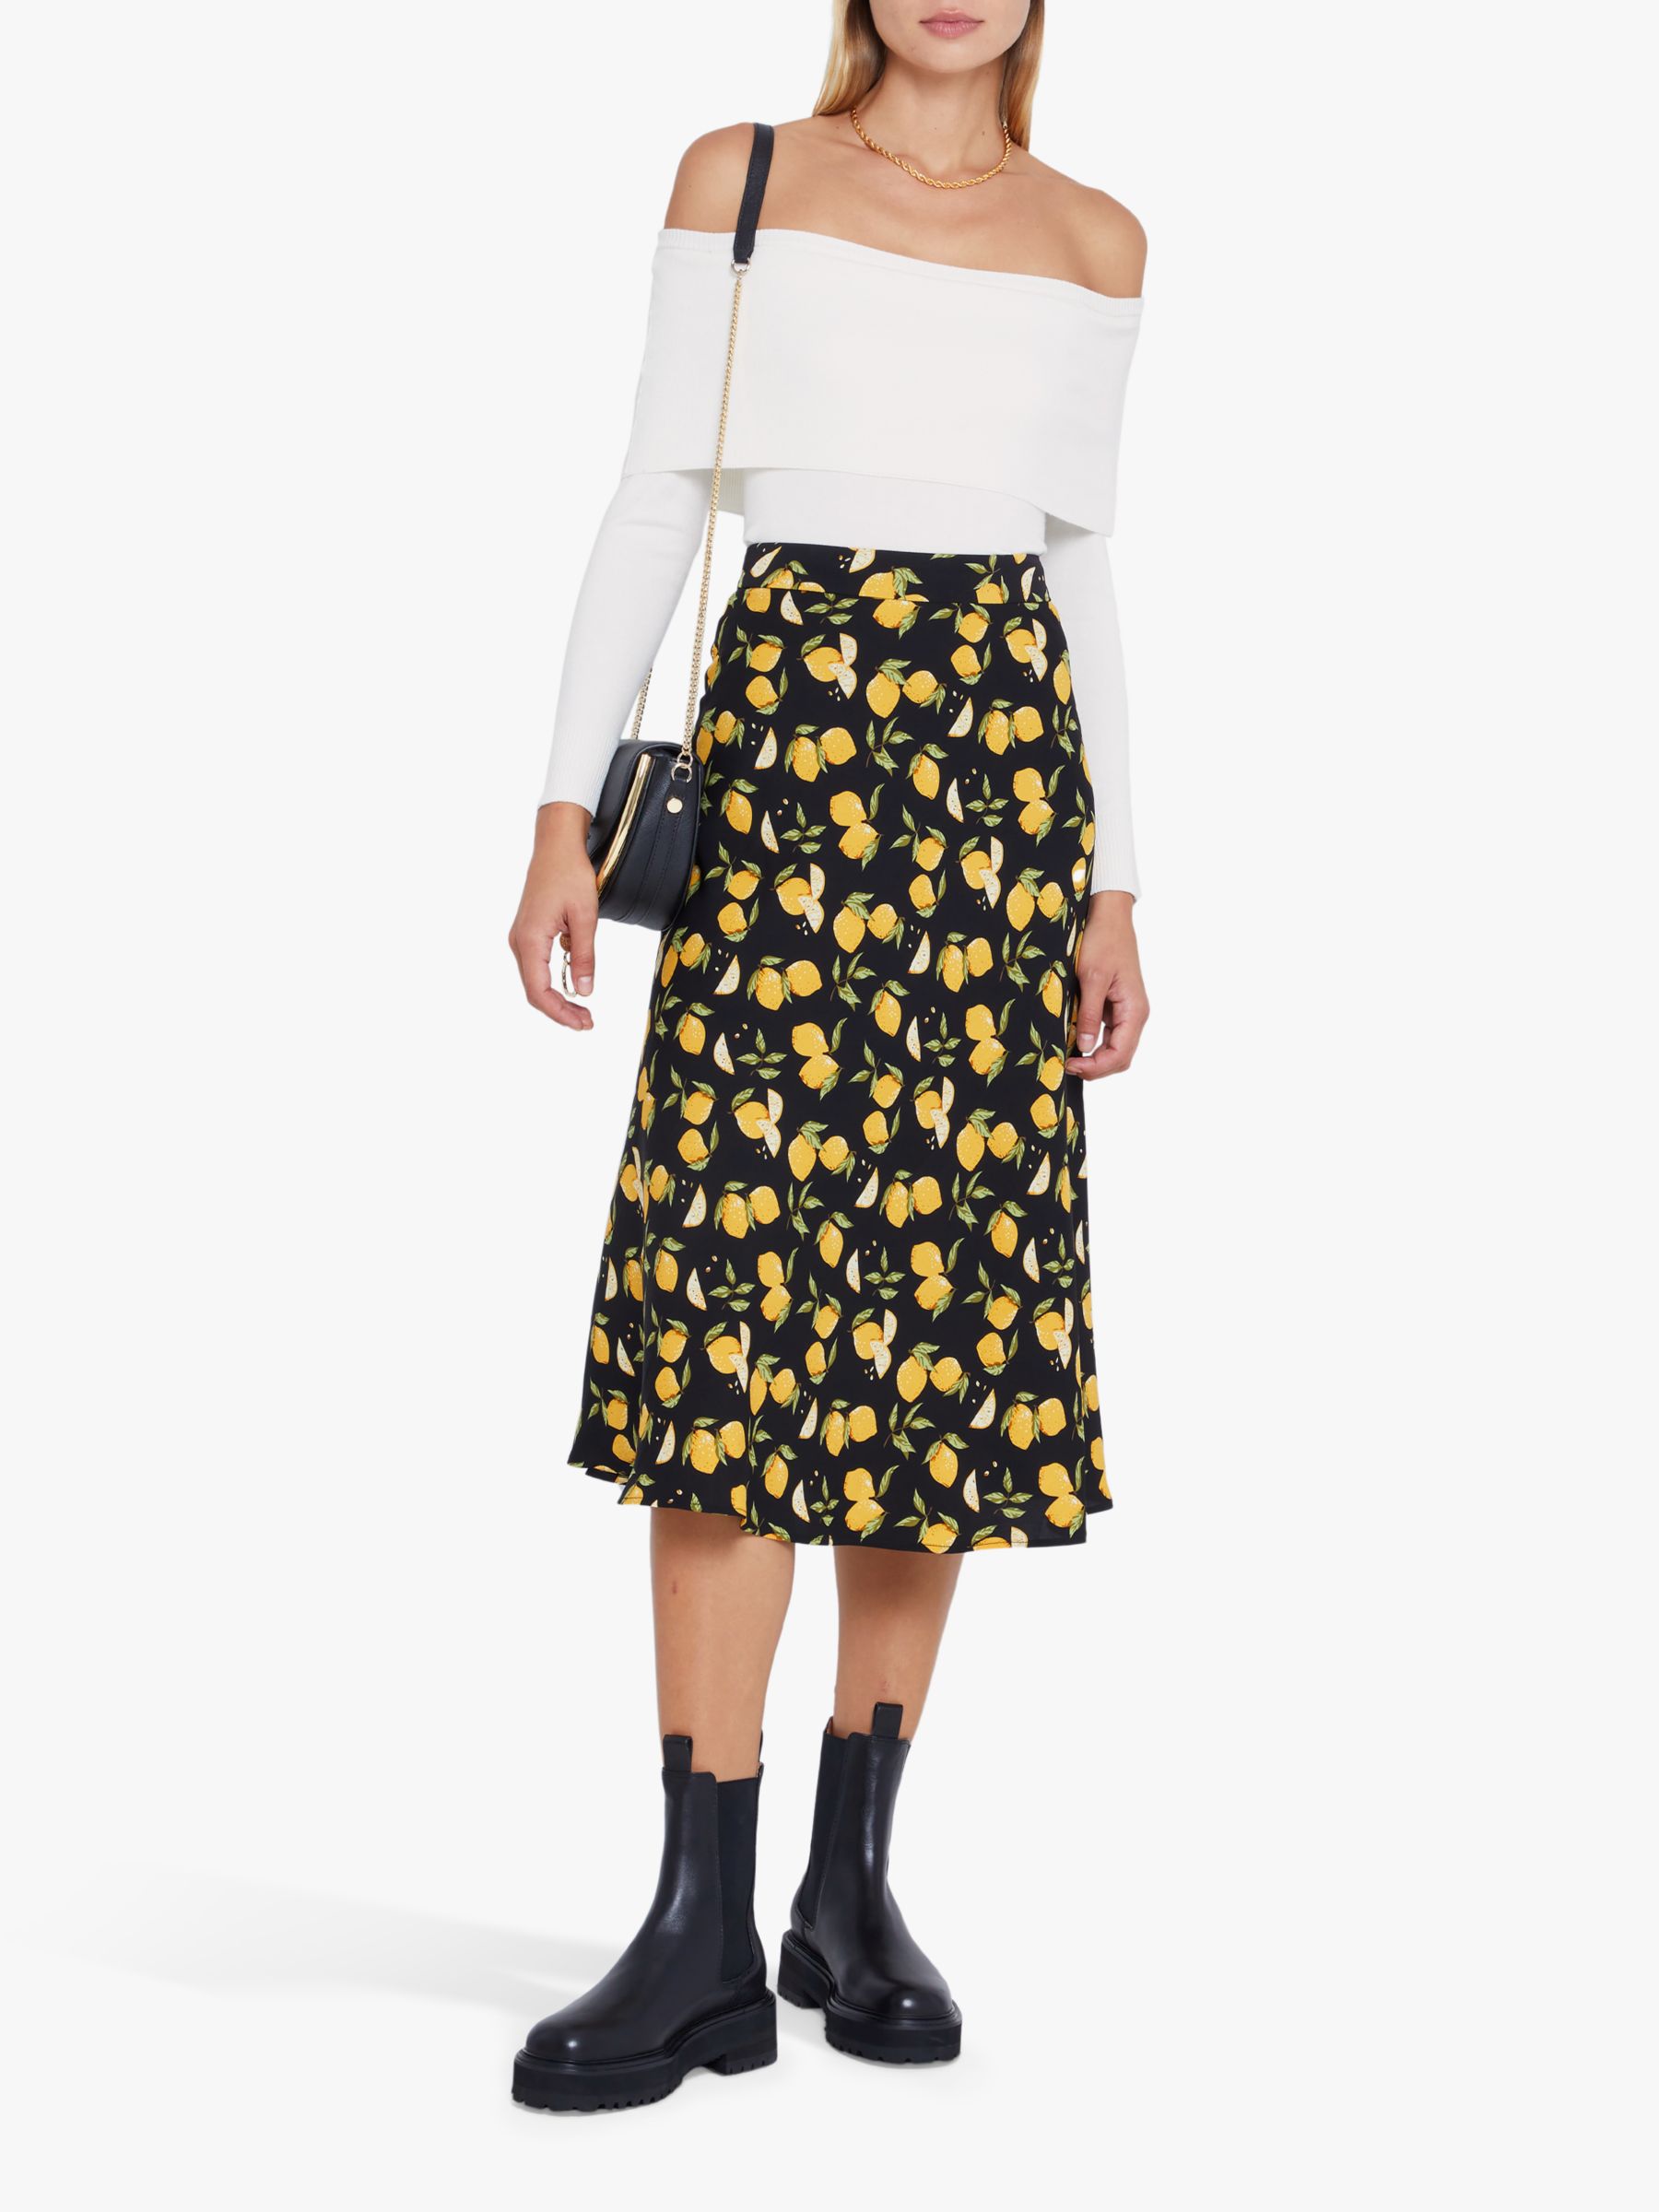 kourt Ryinn Lemon Print Midi Skirt, Black/Yellow